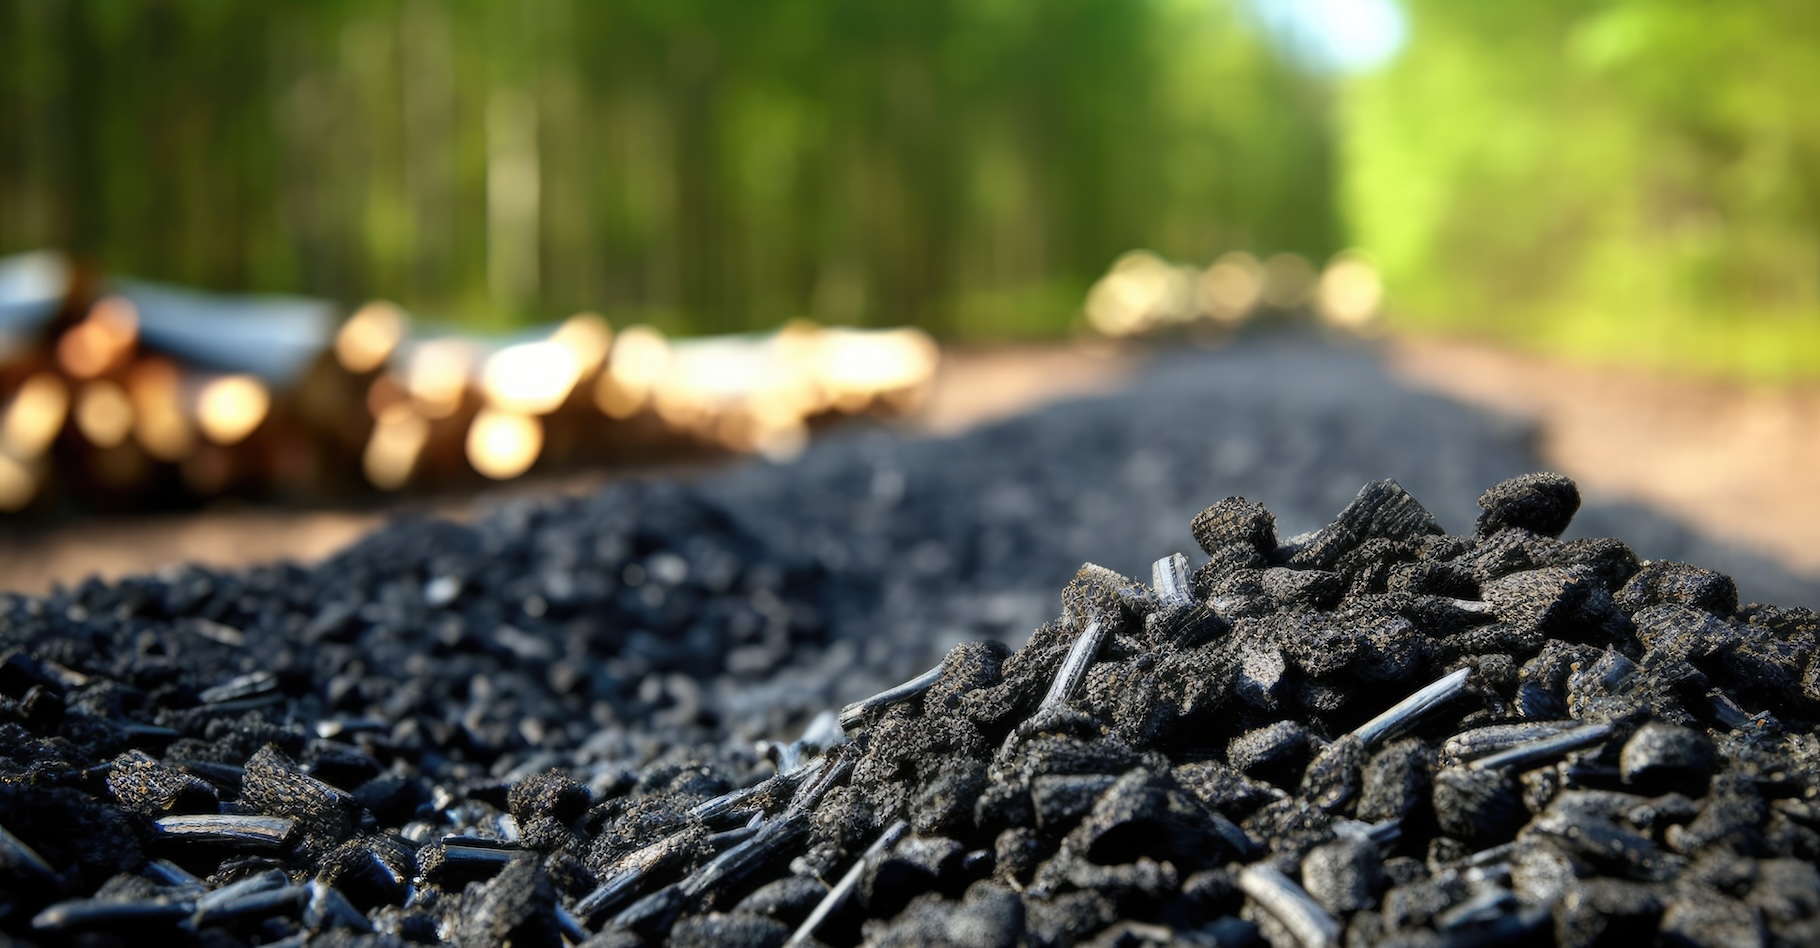 Il ressemble à du charbon, mais il s’agit de biochar, obtenu par pyrolyse de matière végétale. Et des chercheurs de l’université A&amp;M du Texas (États-Unis) confirment aujourd’hui qu’il est bon pour la santé des sols. © Garnar, Adobe Stock